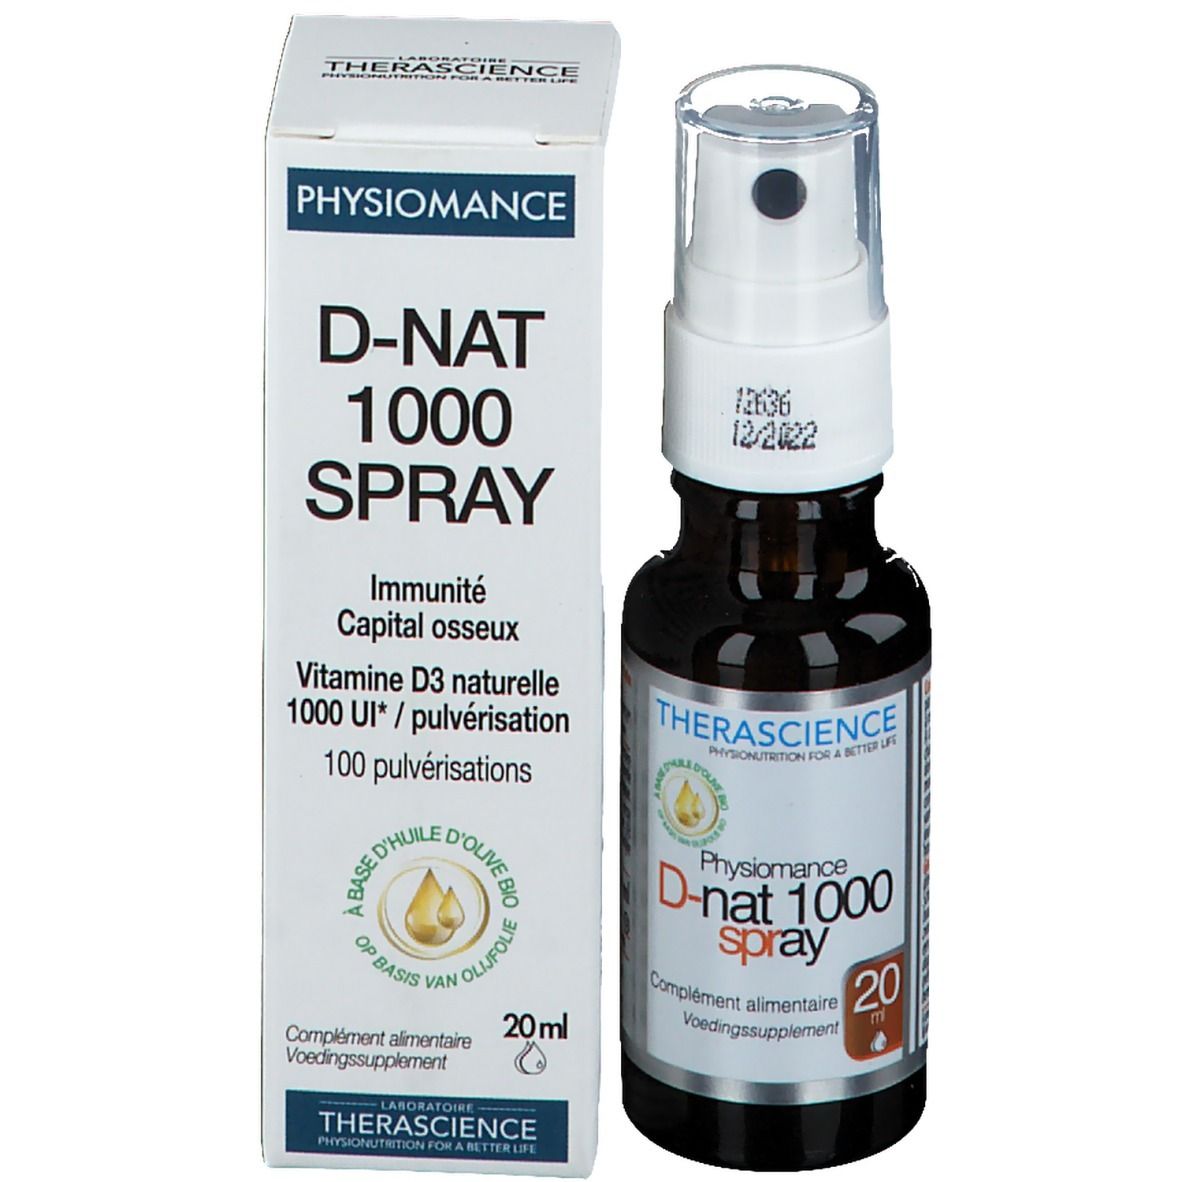 PHYSIOMANCE D-nat 1000 Spray